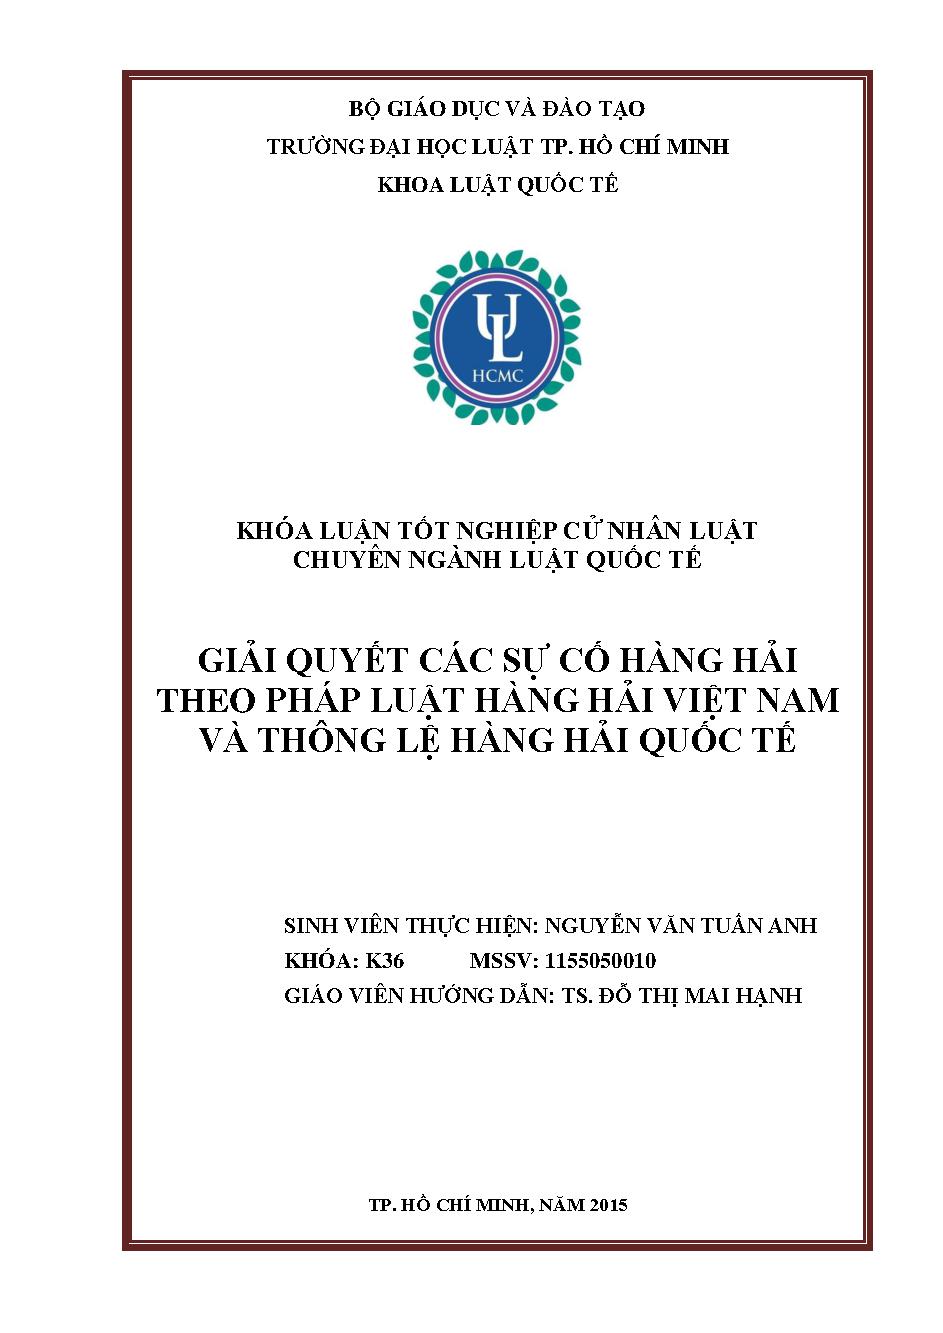 Giải quyết các sự cố hàng hải theo pháp luật hàng hải Việt Nam và thông lệ hàng hải Quốc tế